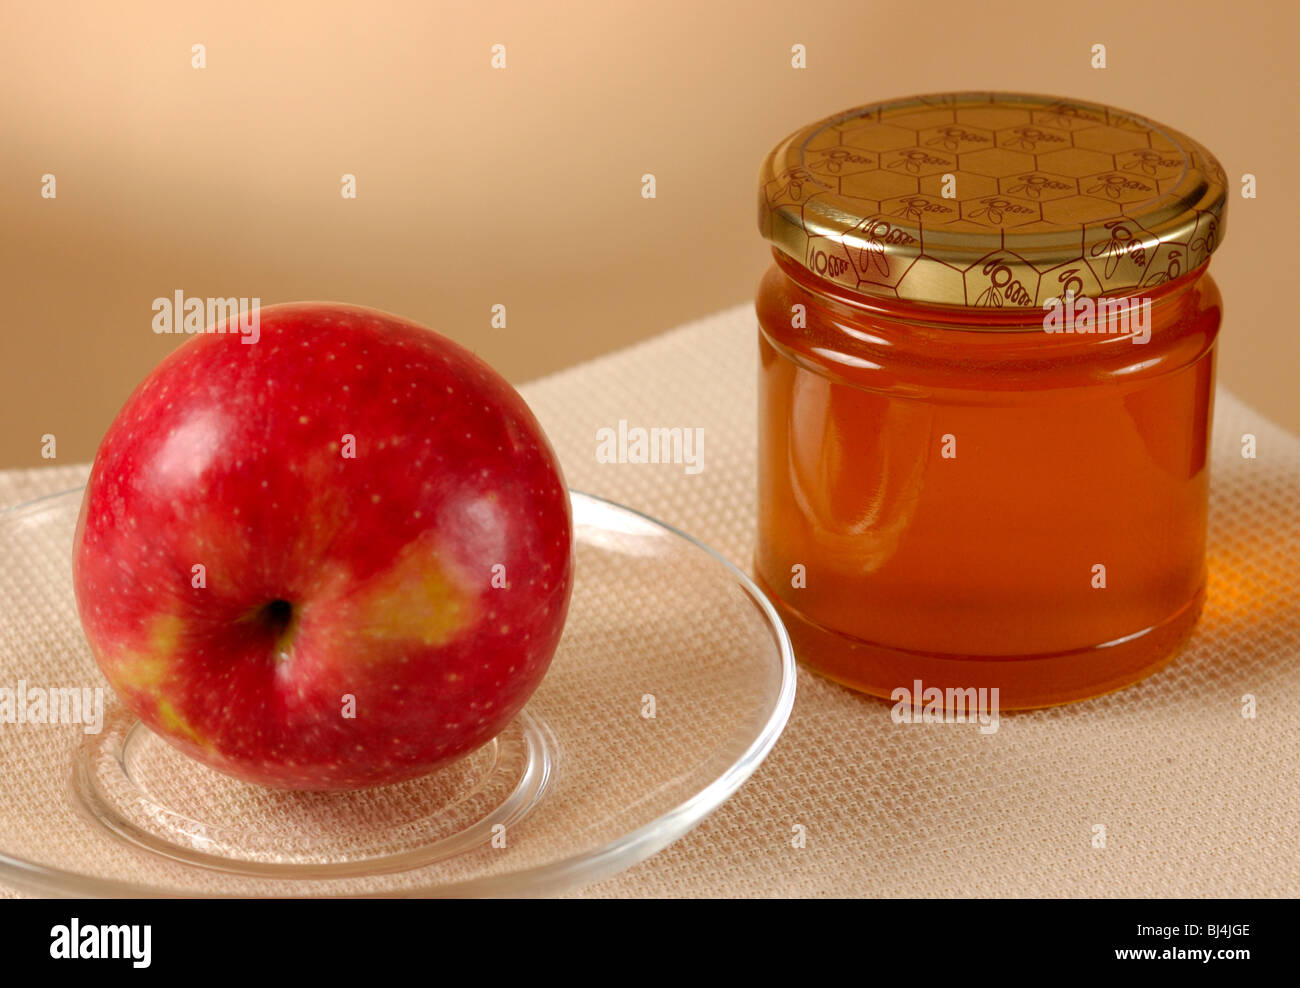 Pomme rouge sur la plaque et pot de miel still life Banque D'Images